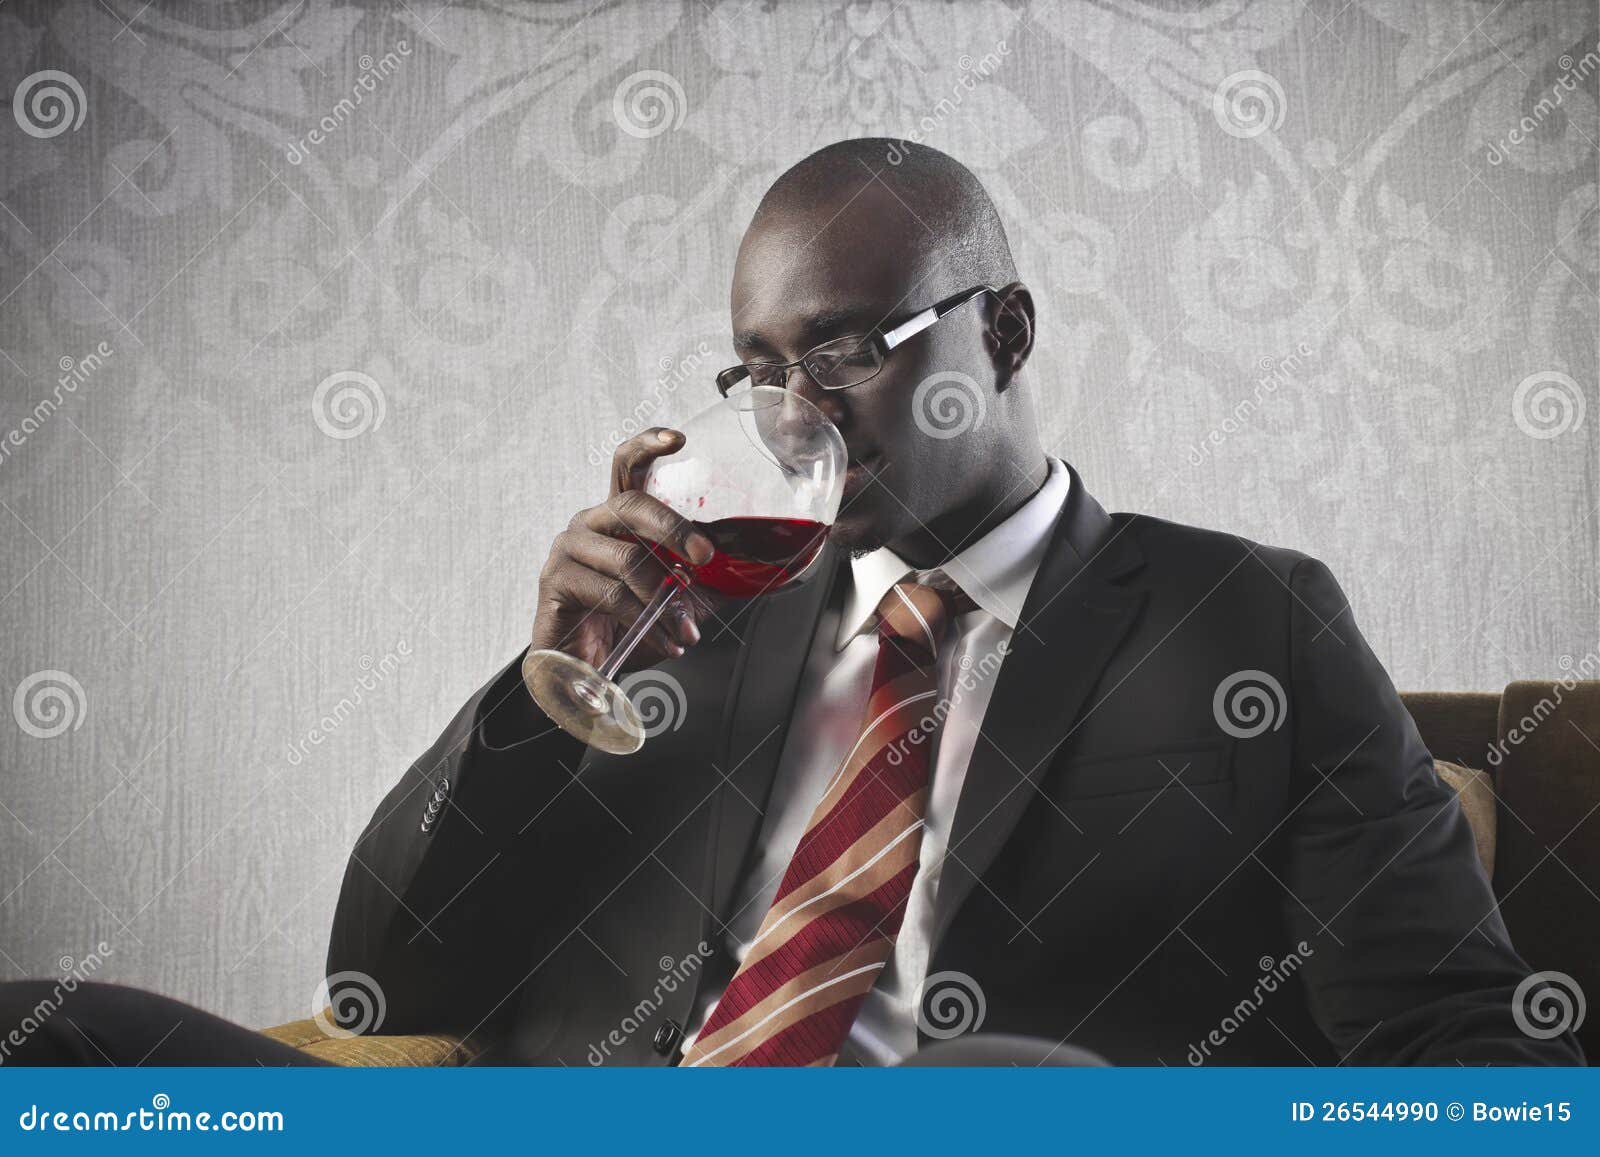 Vinho bebendo do homem de negócios preto. Um homem de negócios preto está bebendo um vidro do vinho vermelho.